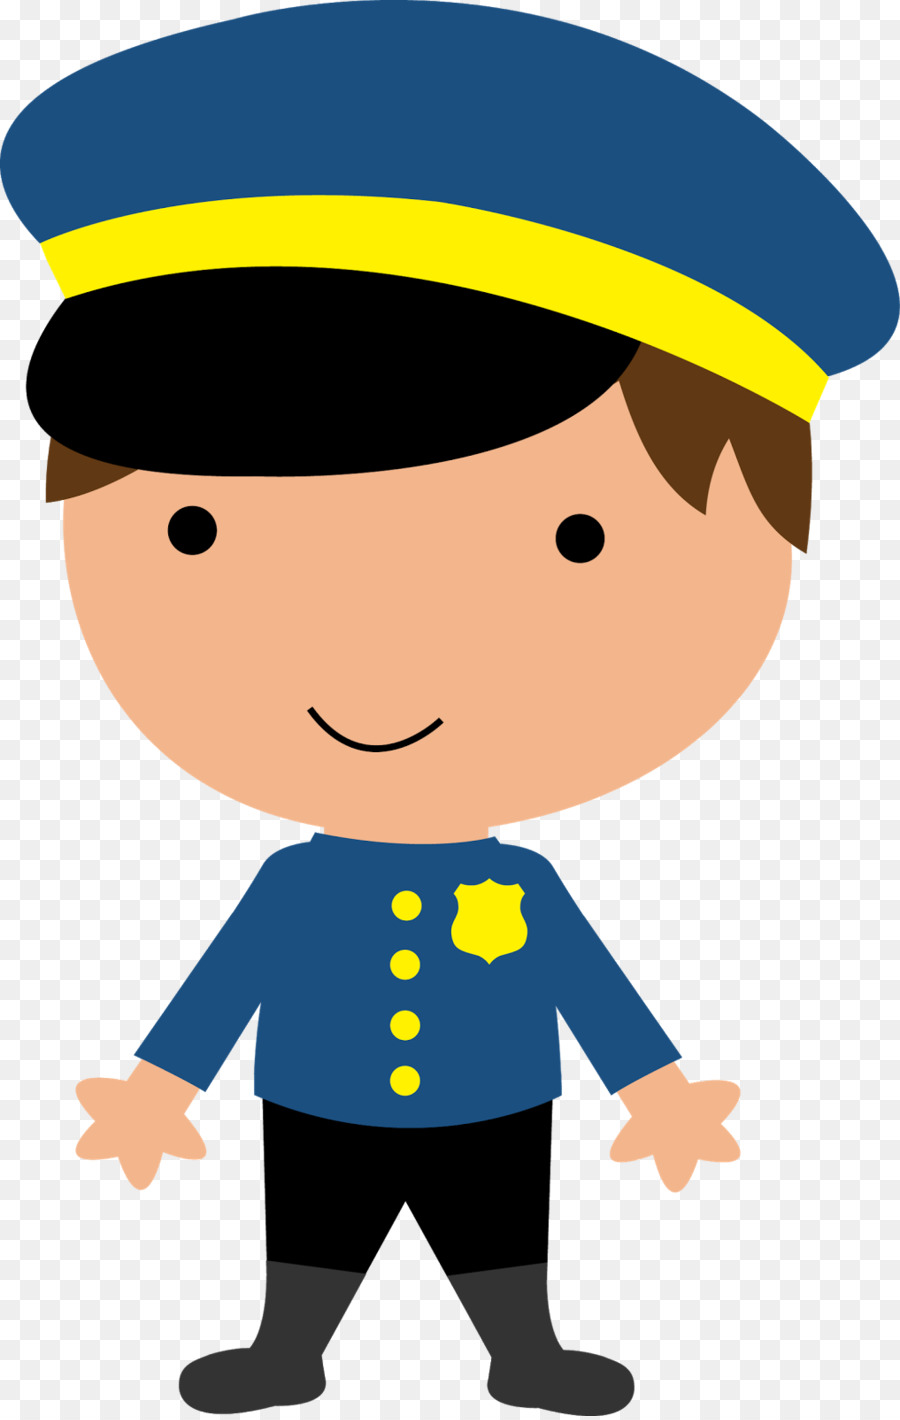 Polizei-Offizier-T-shirt mit Clip-art - Polizist